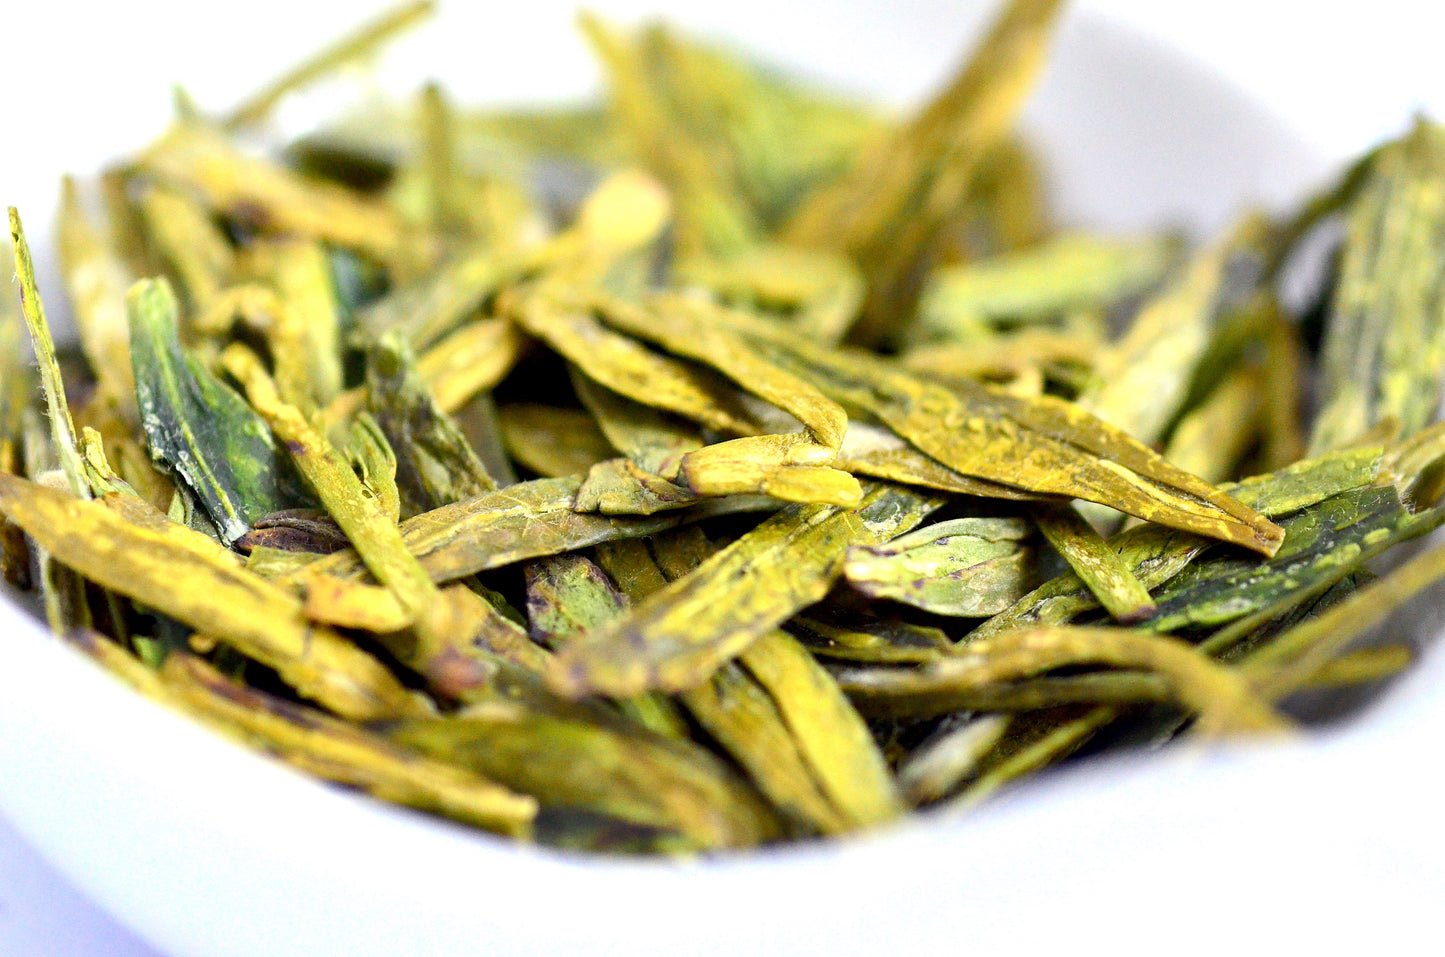 Xihu Long Jing Chinese Green Tea